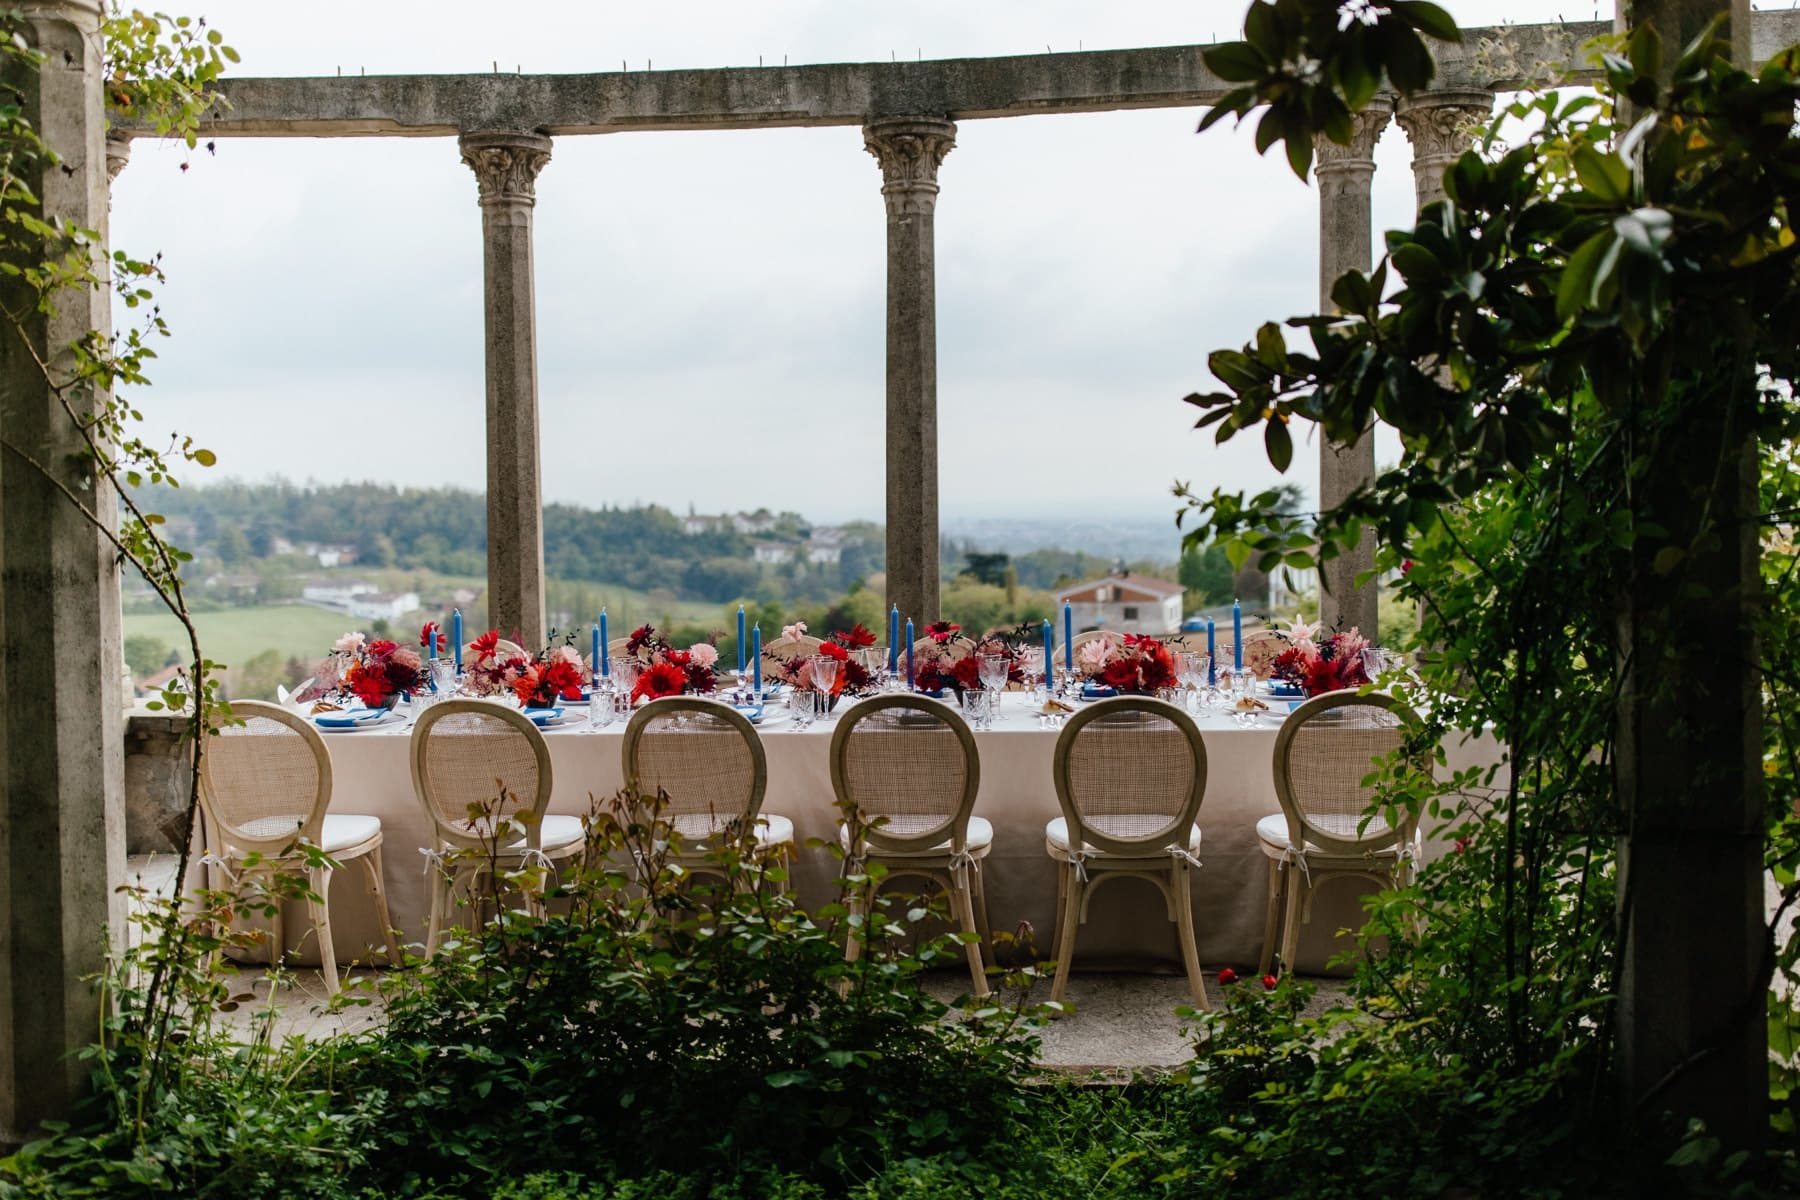 Matrimonio colorato ai Giardini la Pergola vicino ad Alessandria con fiori di carta ecologico ed elegante. Fotografo Edoardo Giorio